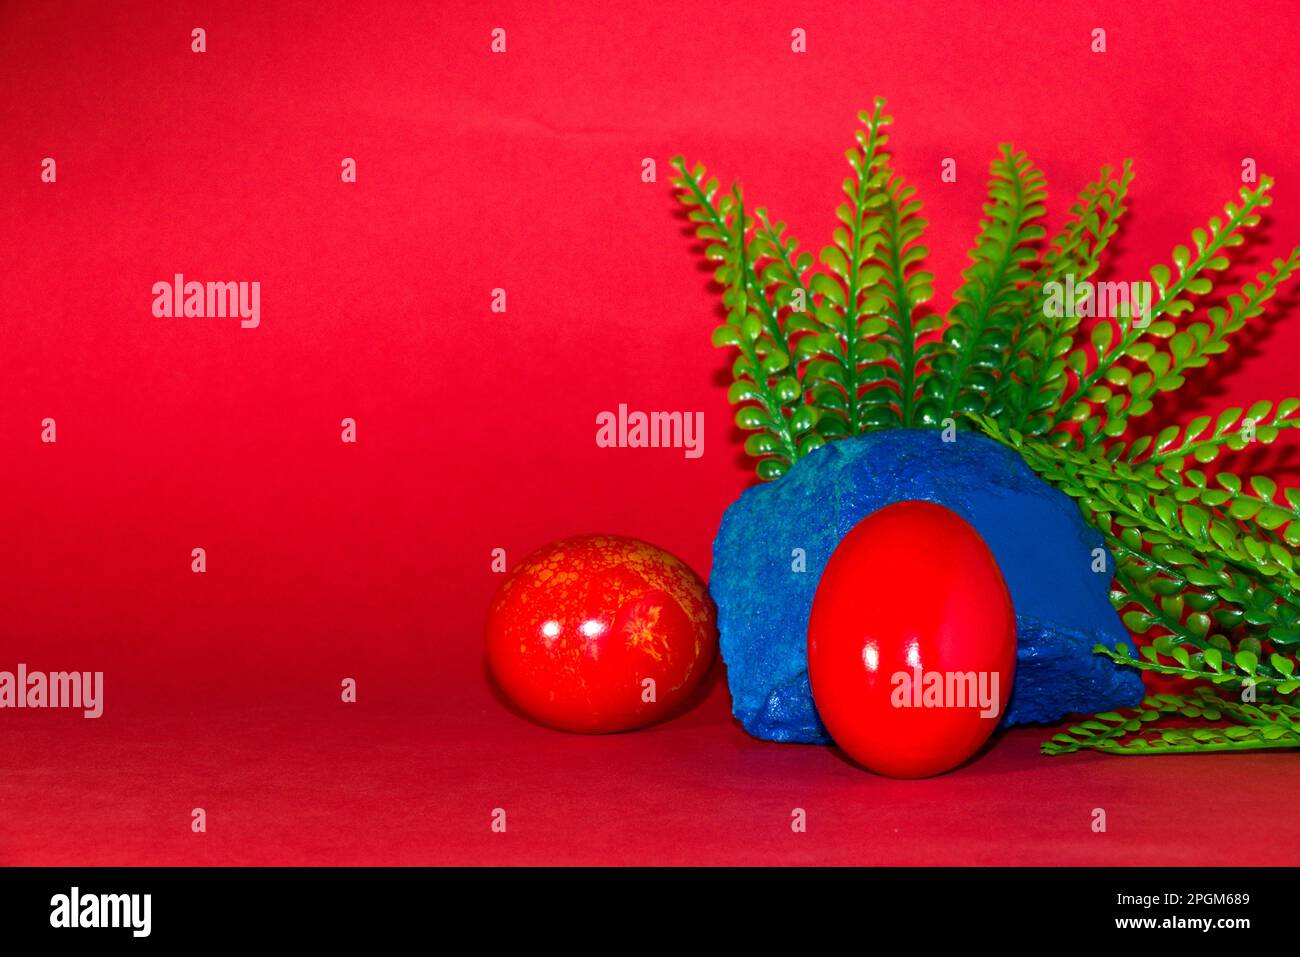 Rotes Ei auf blauem Stein mit pflanzlichem, kreativem Weihnachtsdesign auf rotem Hintergrund Stockfoto